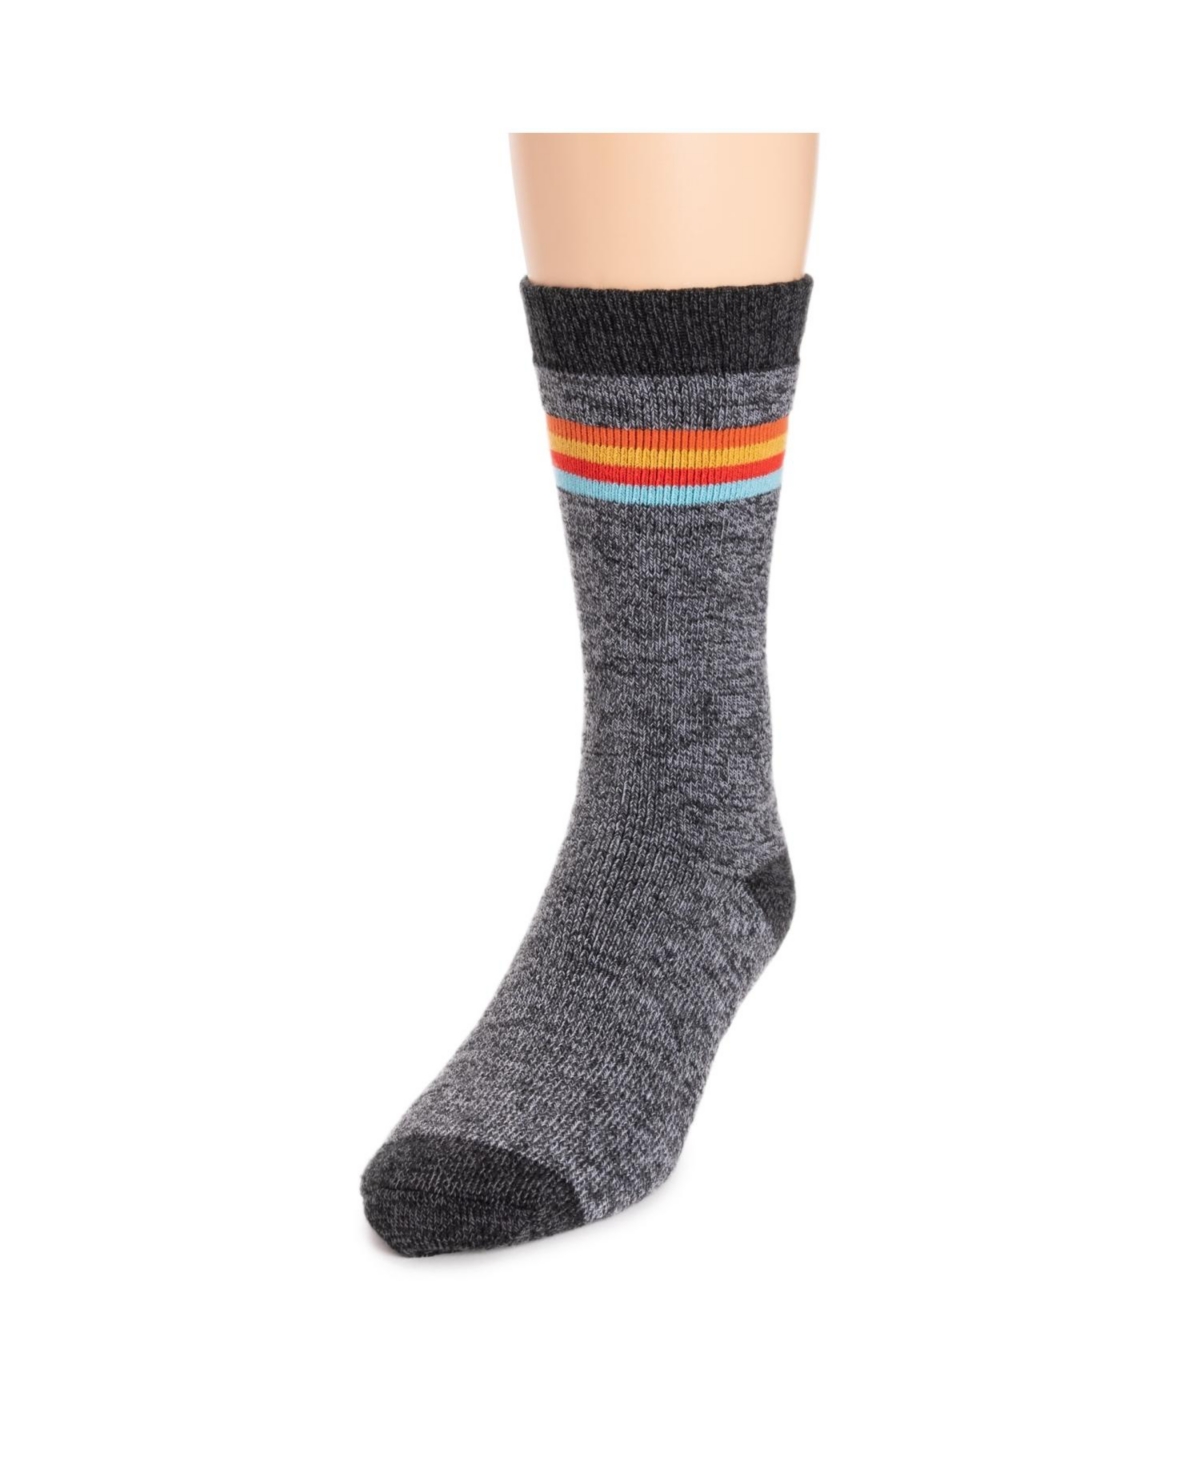 Men's Repreve Sock, Black Stripe, One Size - Black stripe